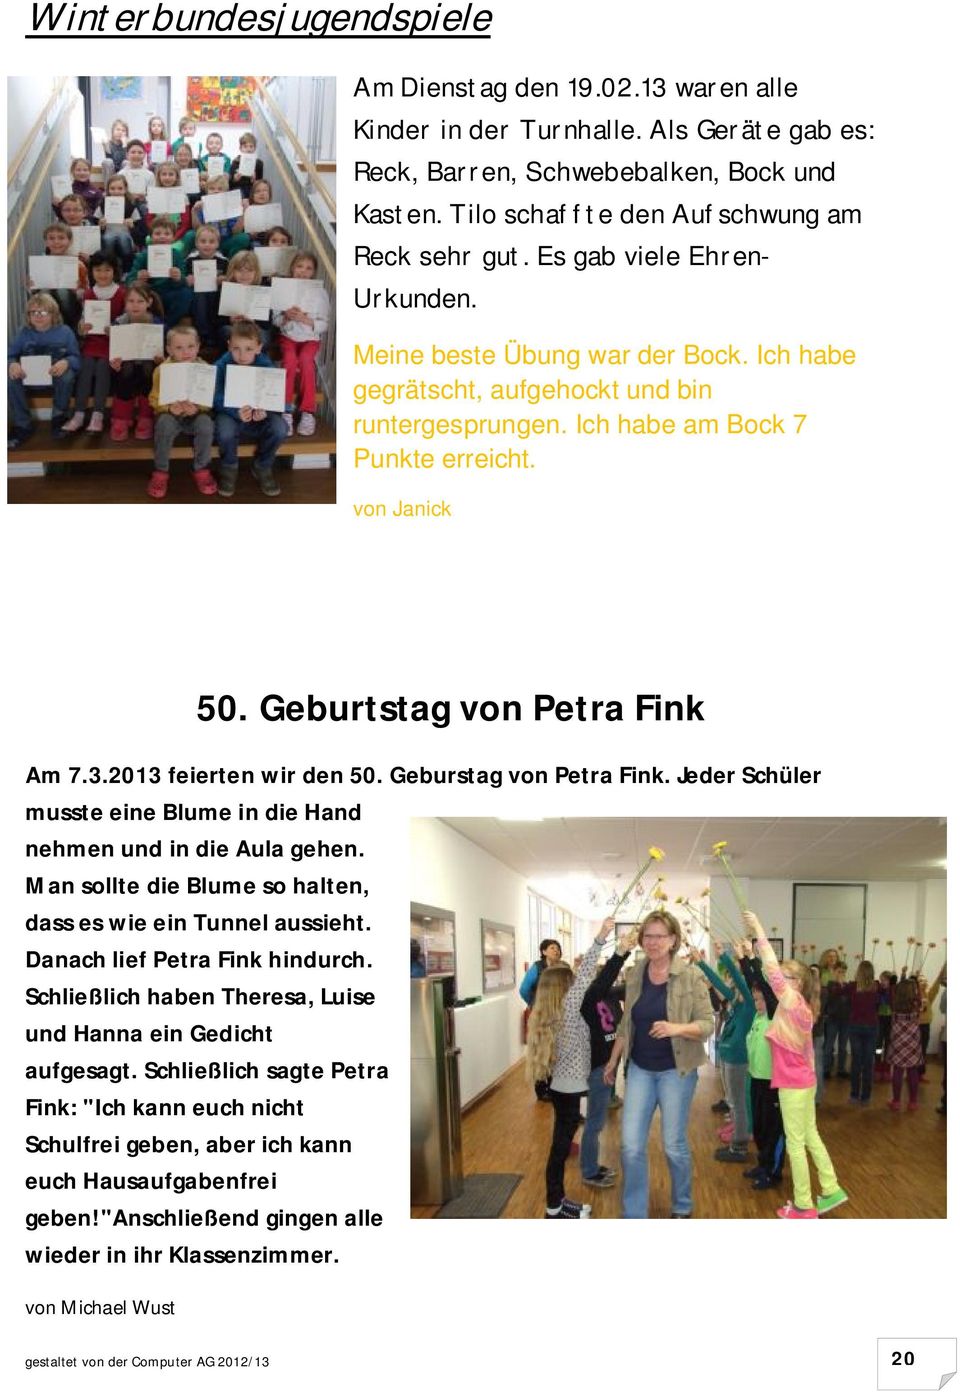 Geburtstag von Petra Fink Am 7.3.2013 feierten wir den 50. Geburstag von Petra Fink. Jeder Schüler musste eine Blume in die Hand nehmen und in die Aula gehen.